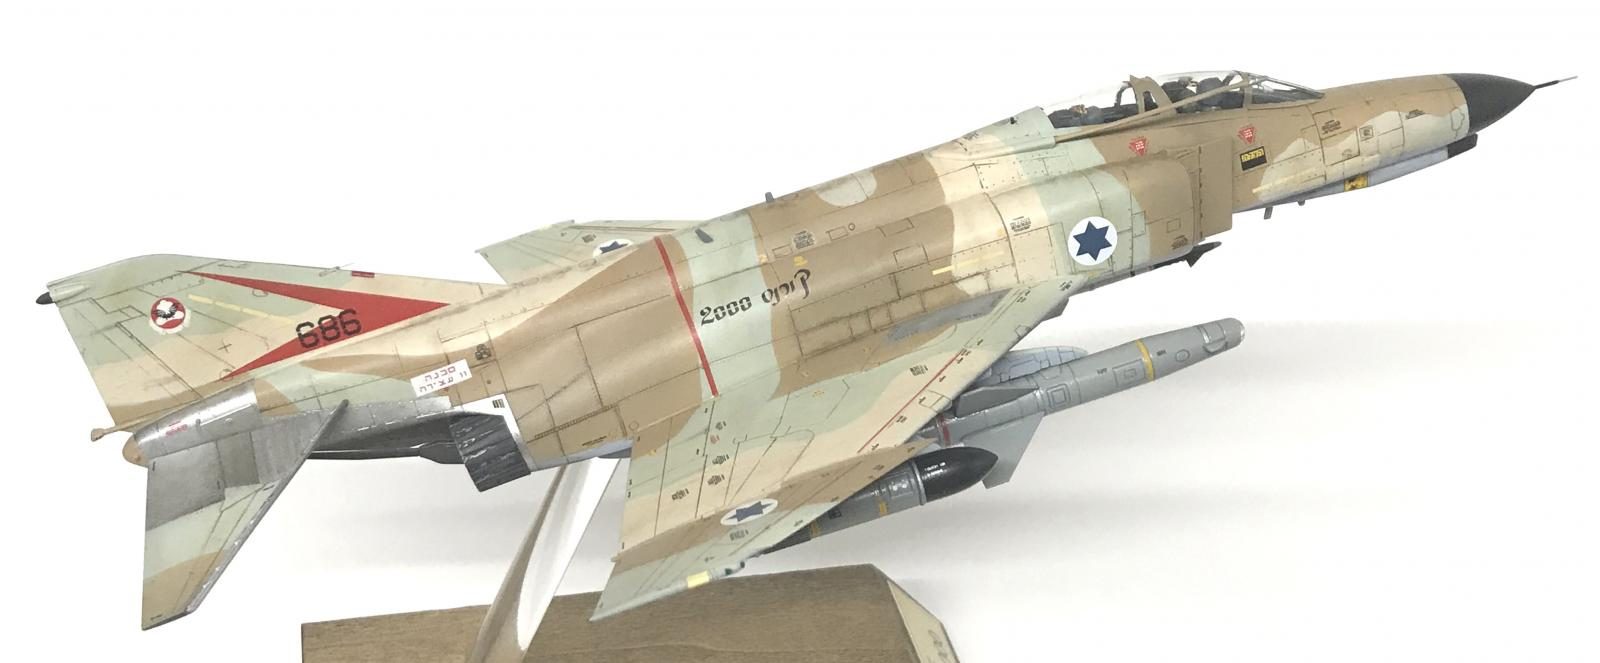 1/72 Israel Air force israeli f-4 phantom fighter Markings Model Kit Water Decal